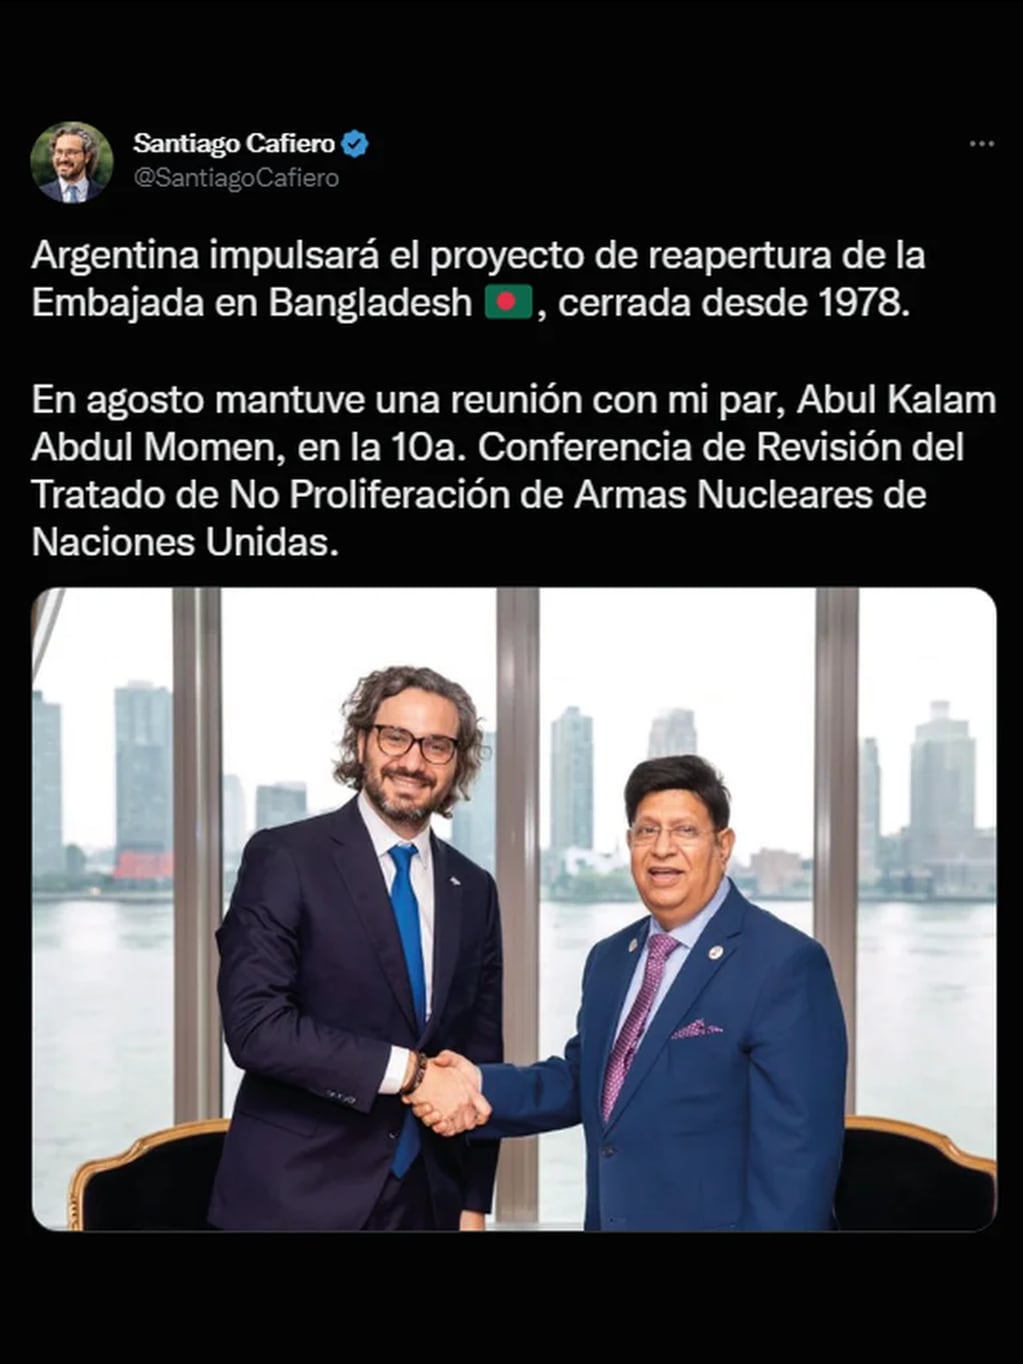 Santiago Cafiero confirmó a través de su cuenta oficial de Twitter que la sede diplomática argentina reabrirá sus puertas en Bangladesh.